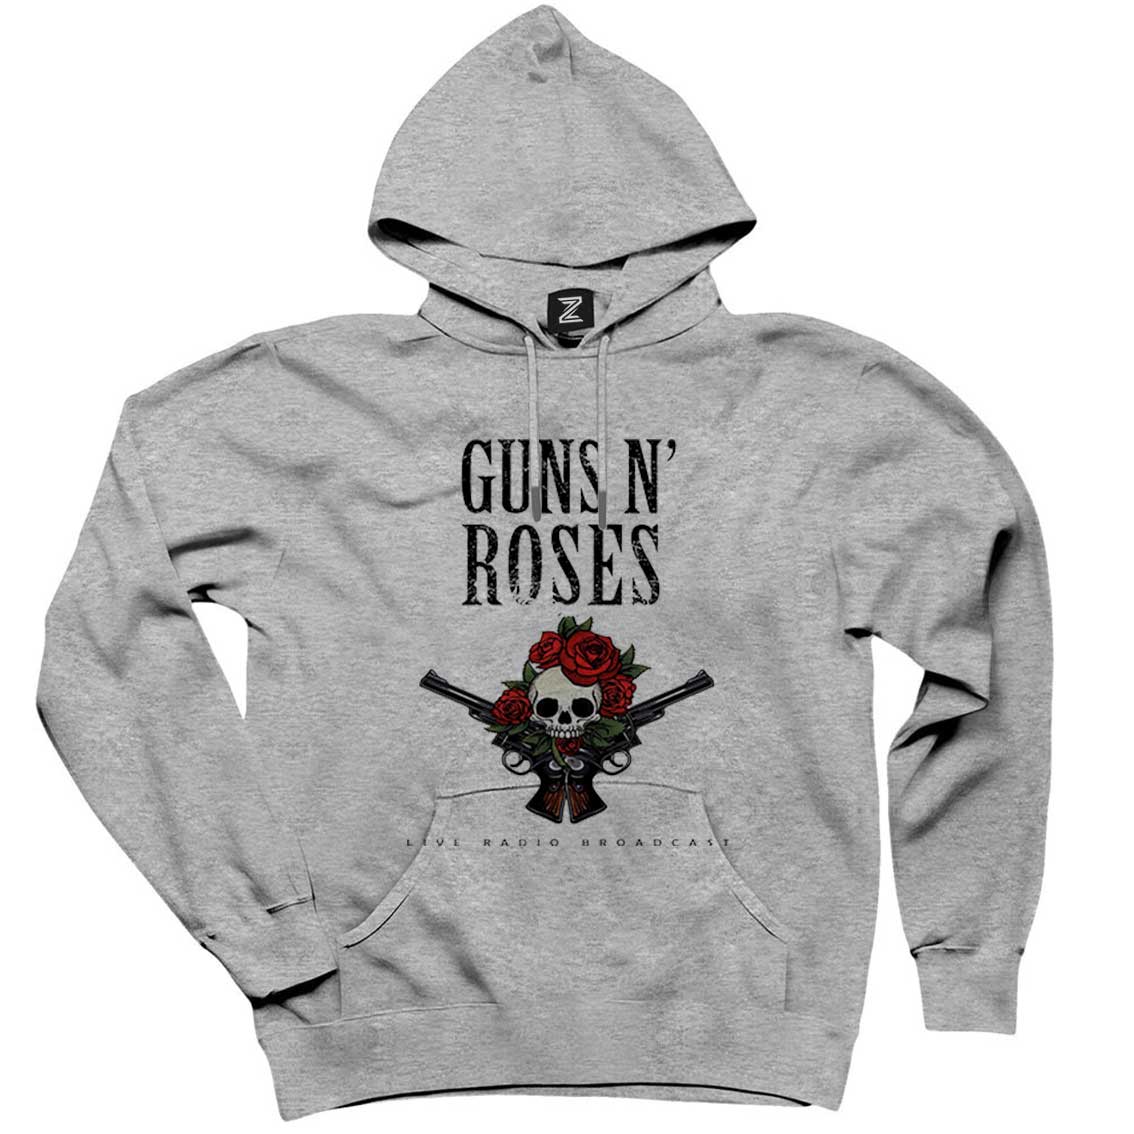 Guns N Roses Live Radio Broadcast Gri Kapşonlu Sweatshirt Hoodie